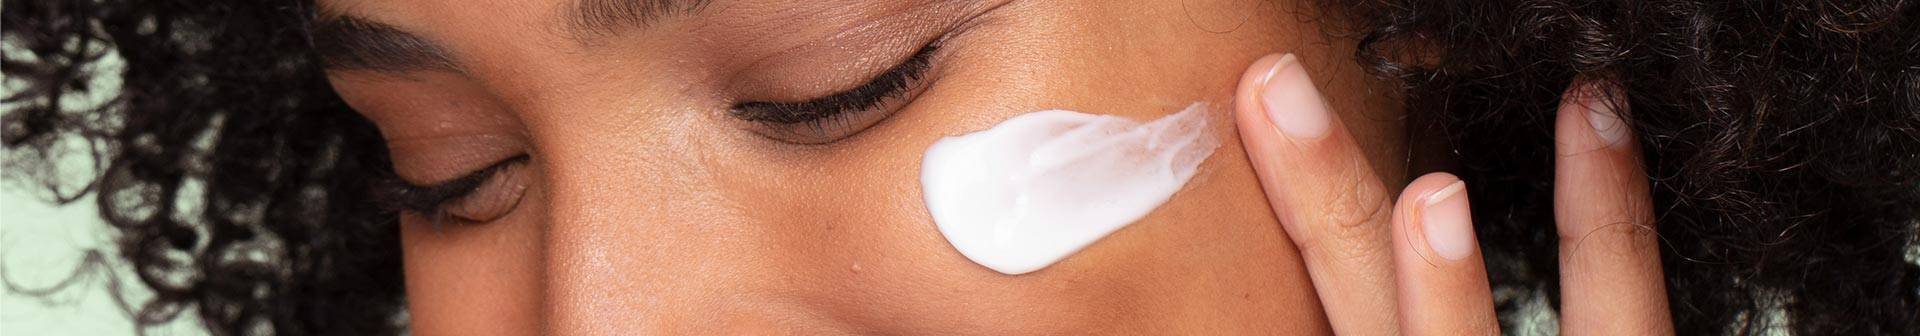 Frau verwendet Augenpflege gegen Tränensäcke